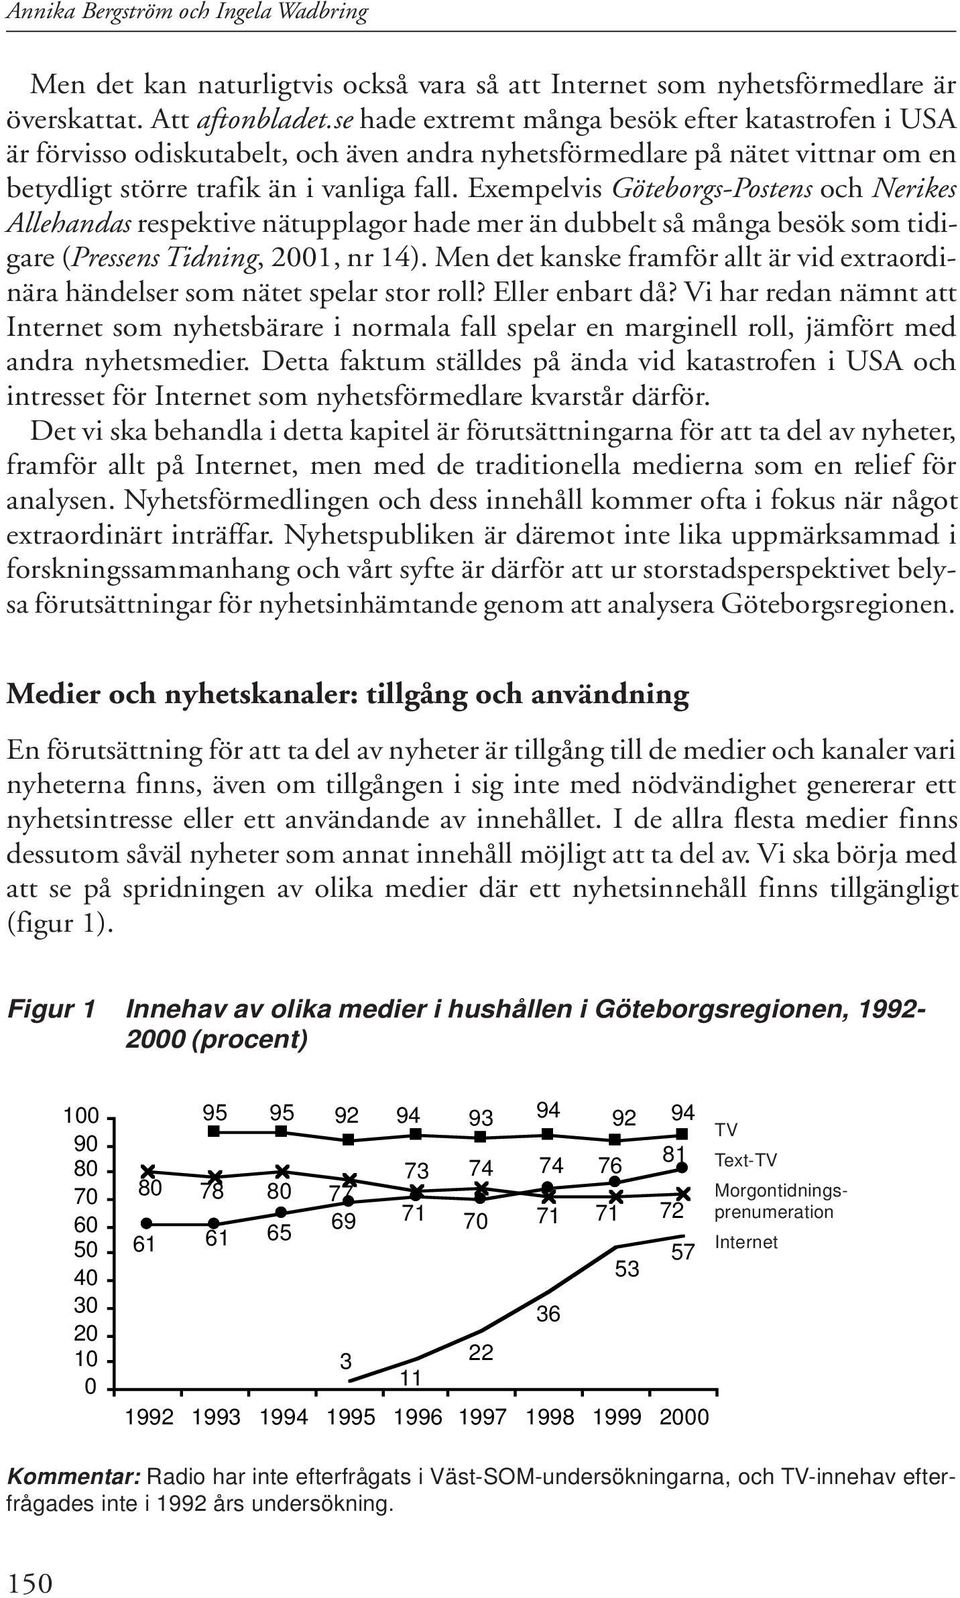 Exempelvis Göteborgs-Postens och Nerikes Allehandas respektive nätupplagor hade mer än dubbelt så många besök som tidigare (Pressens Tidning, 2001, nr 14).